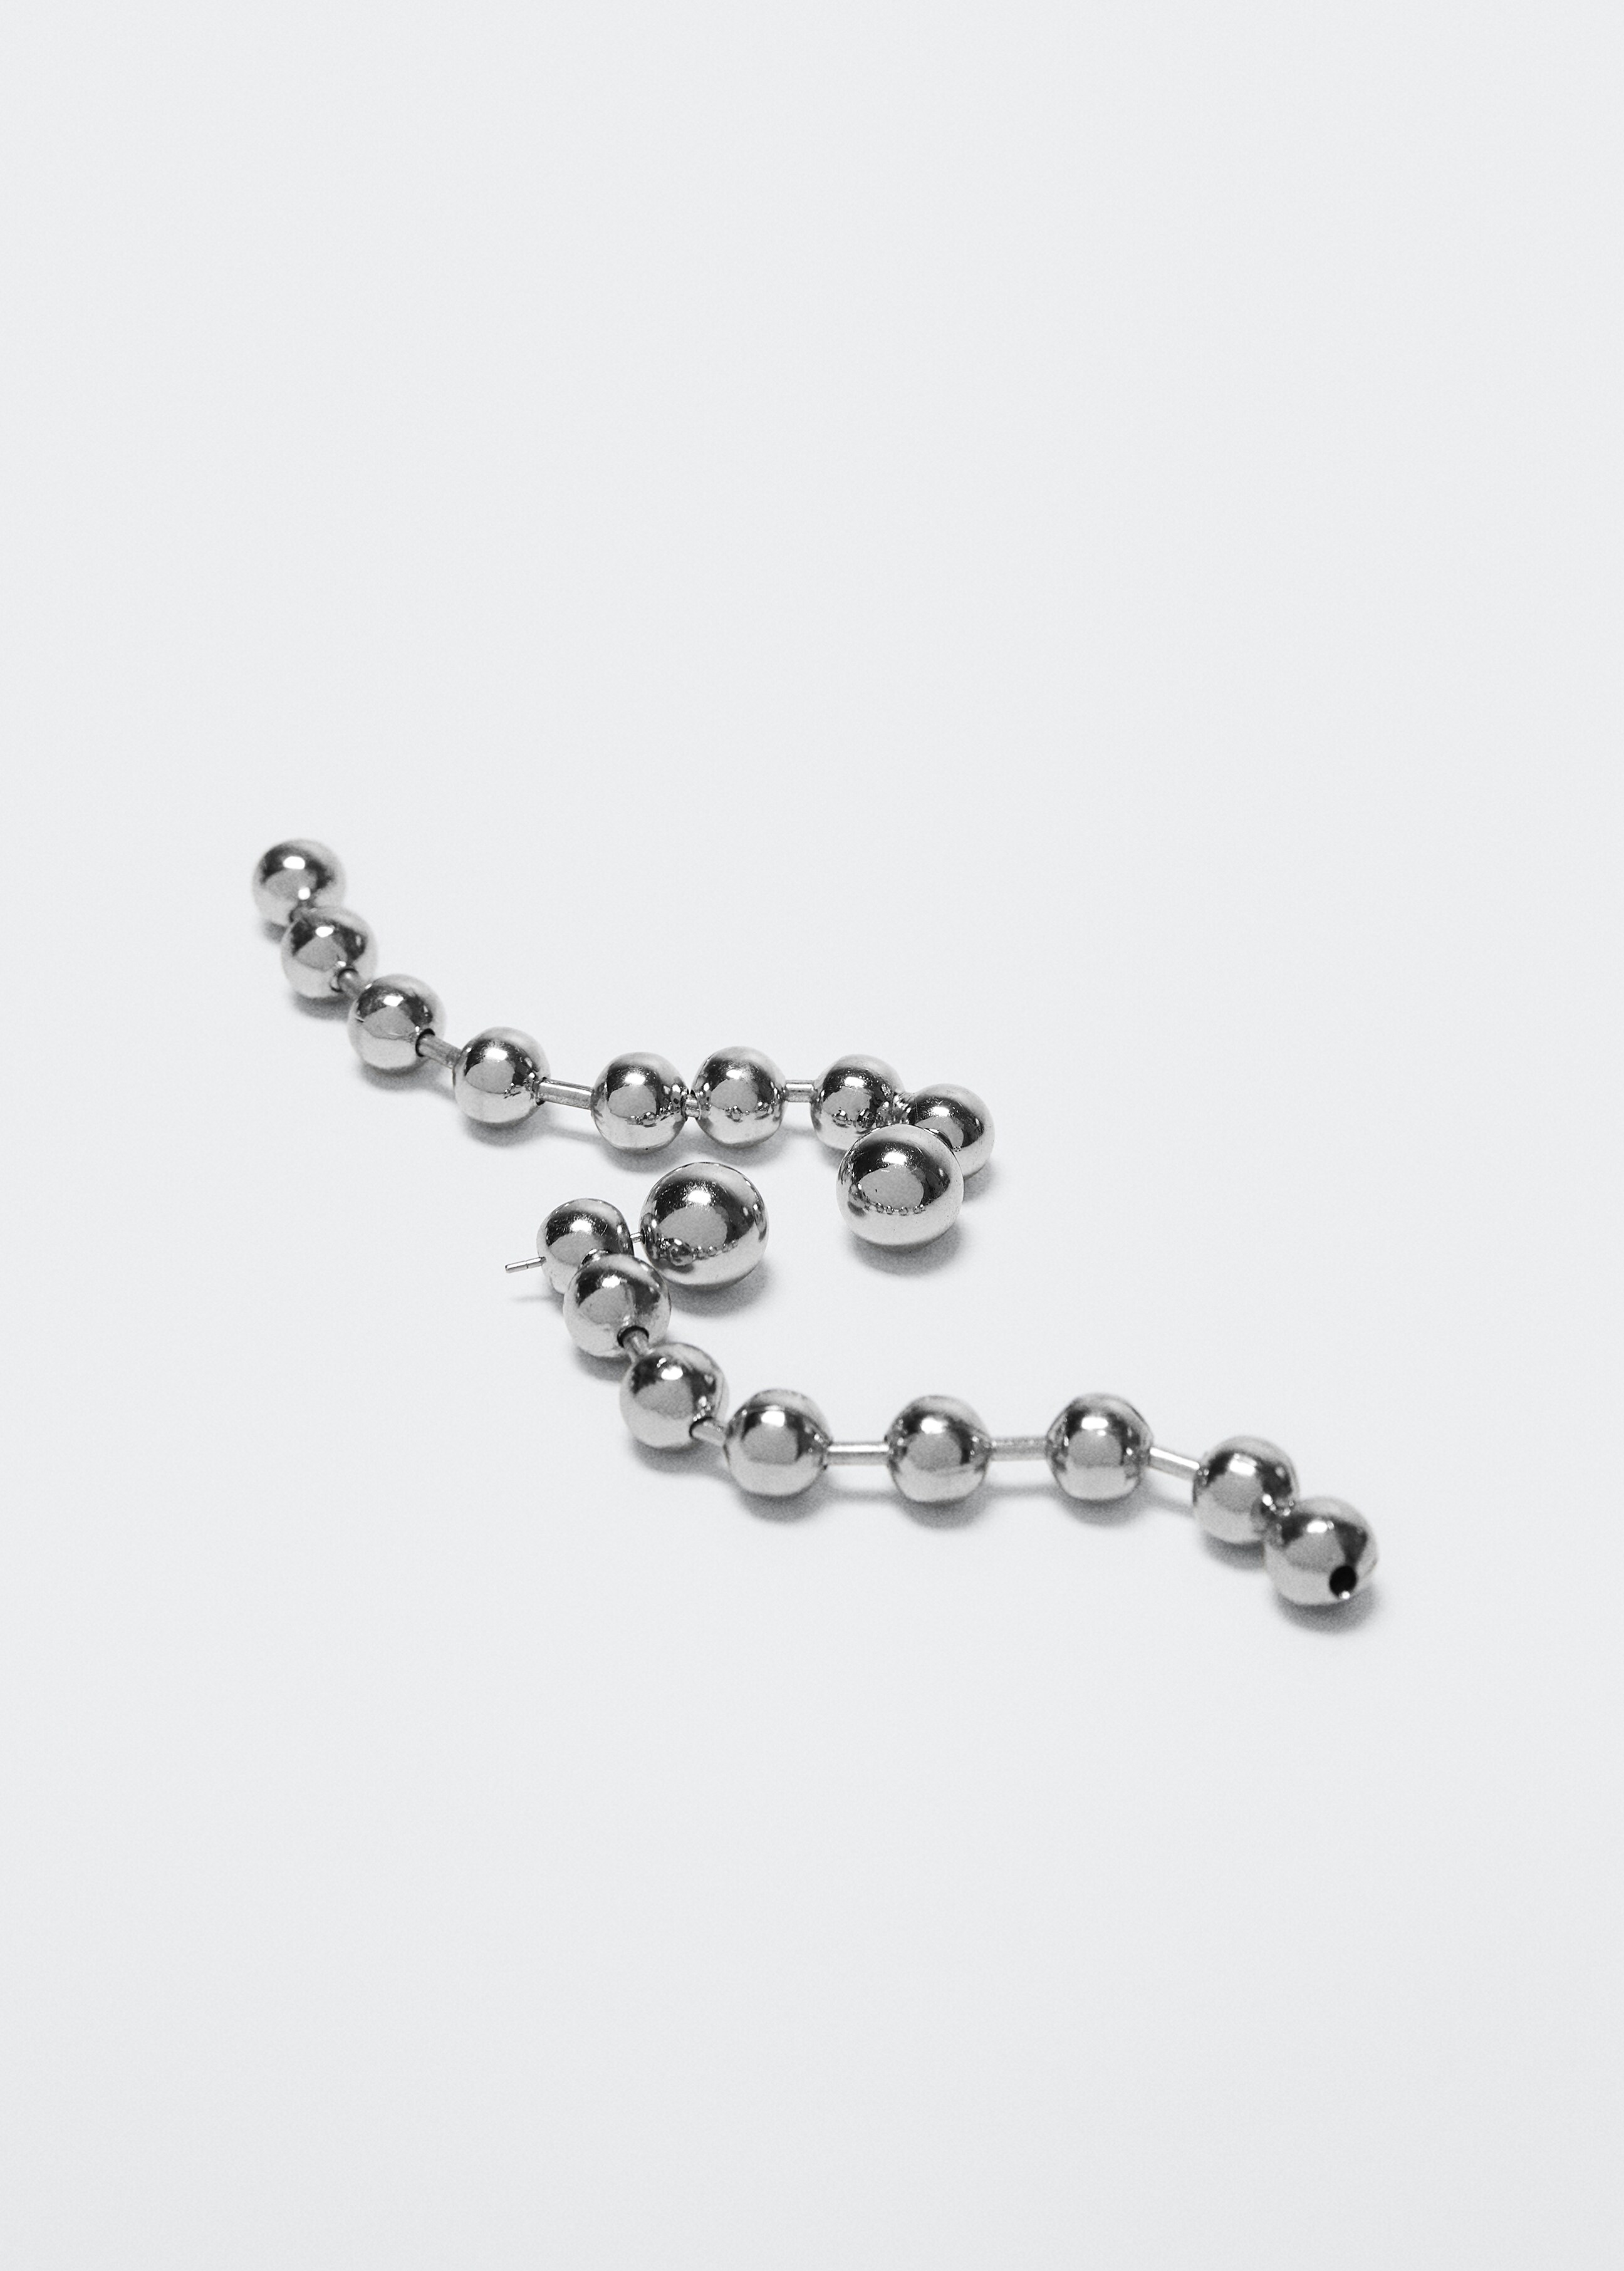 Metal bead earrings - Medium plane